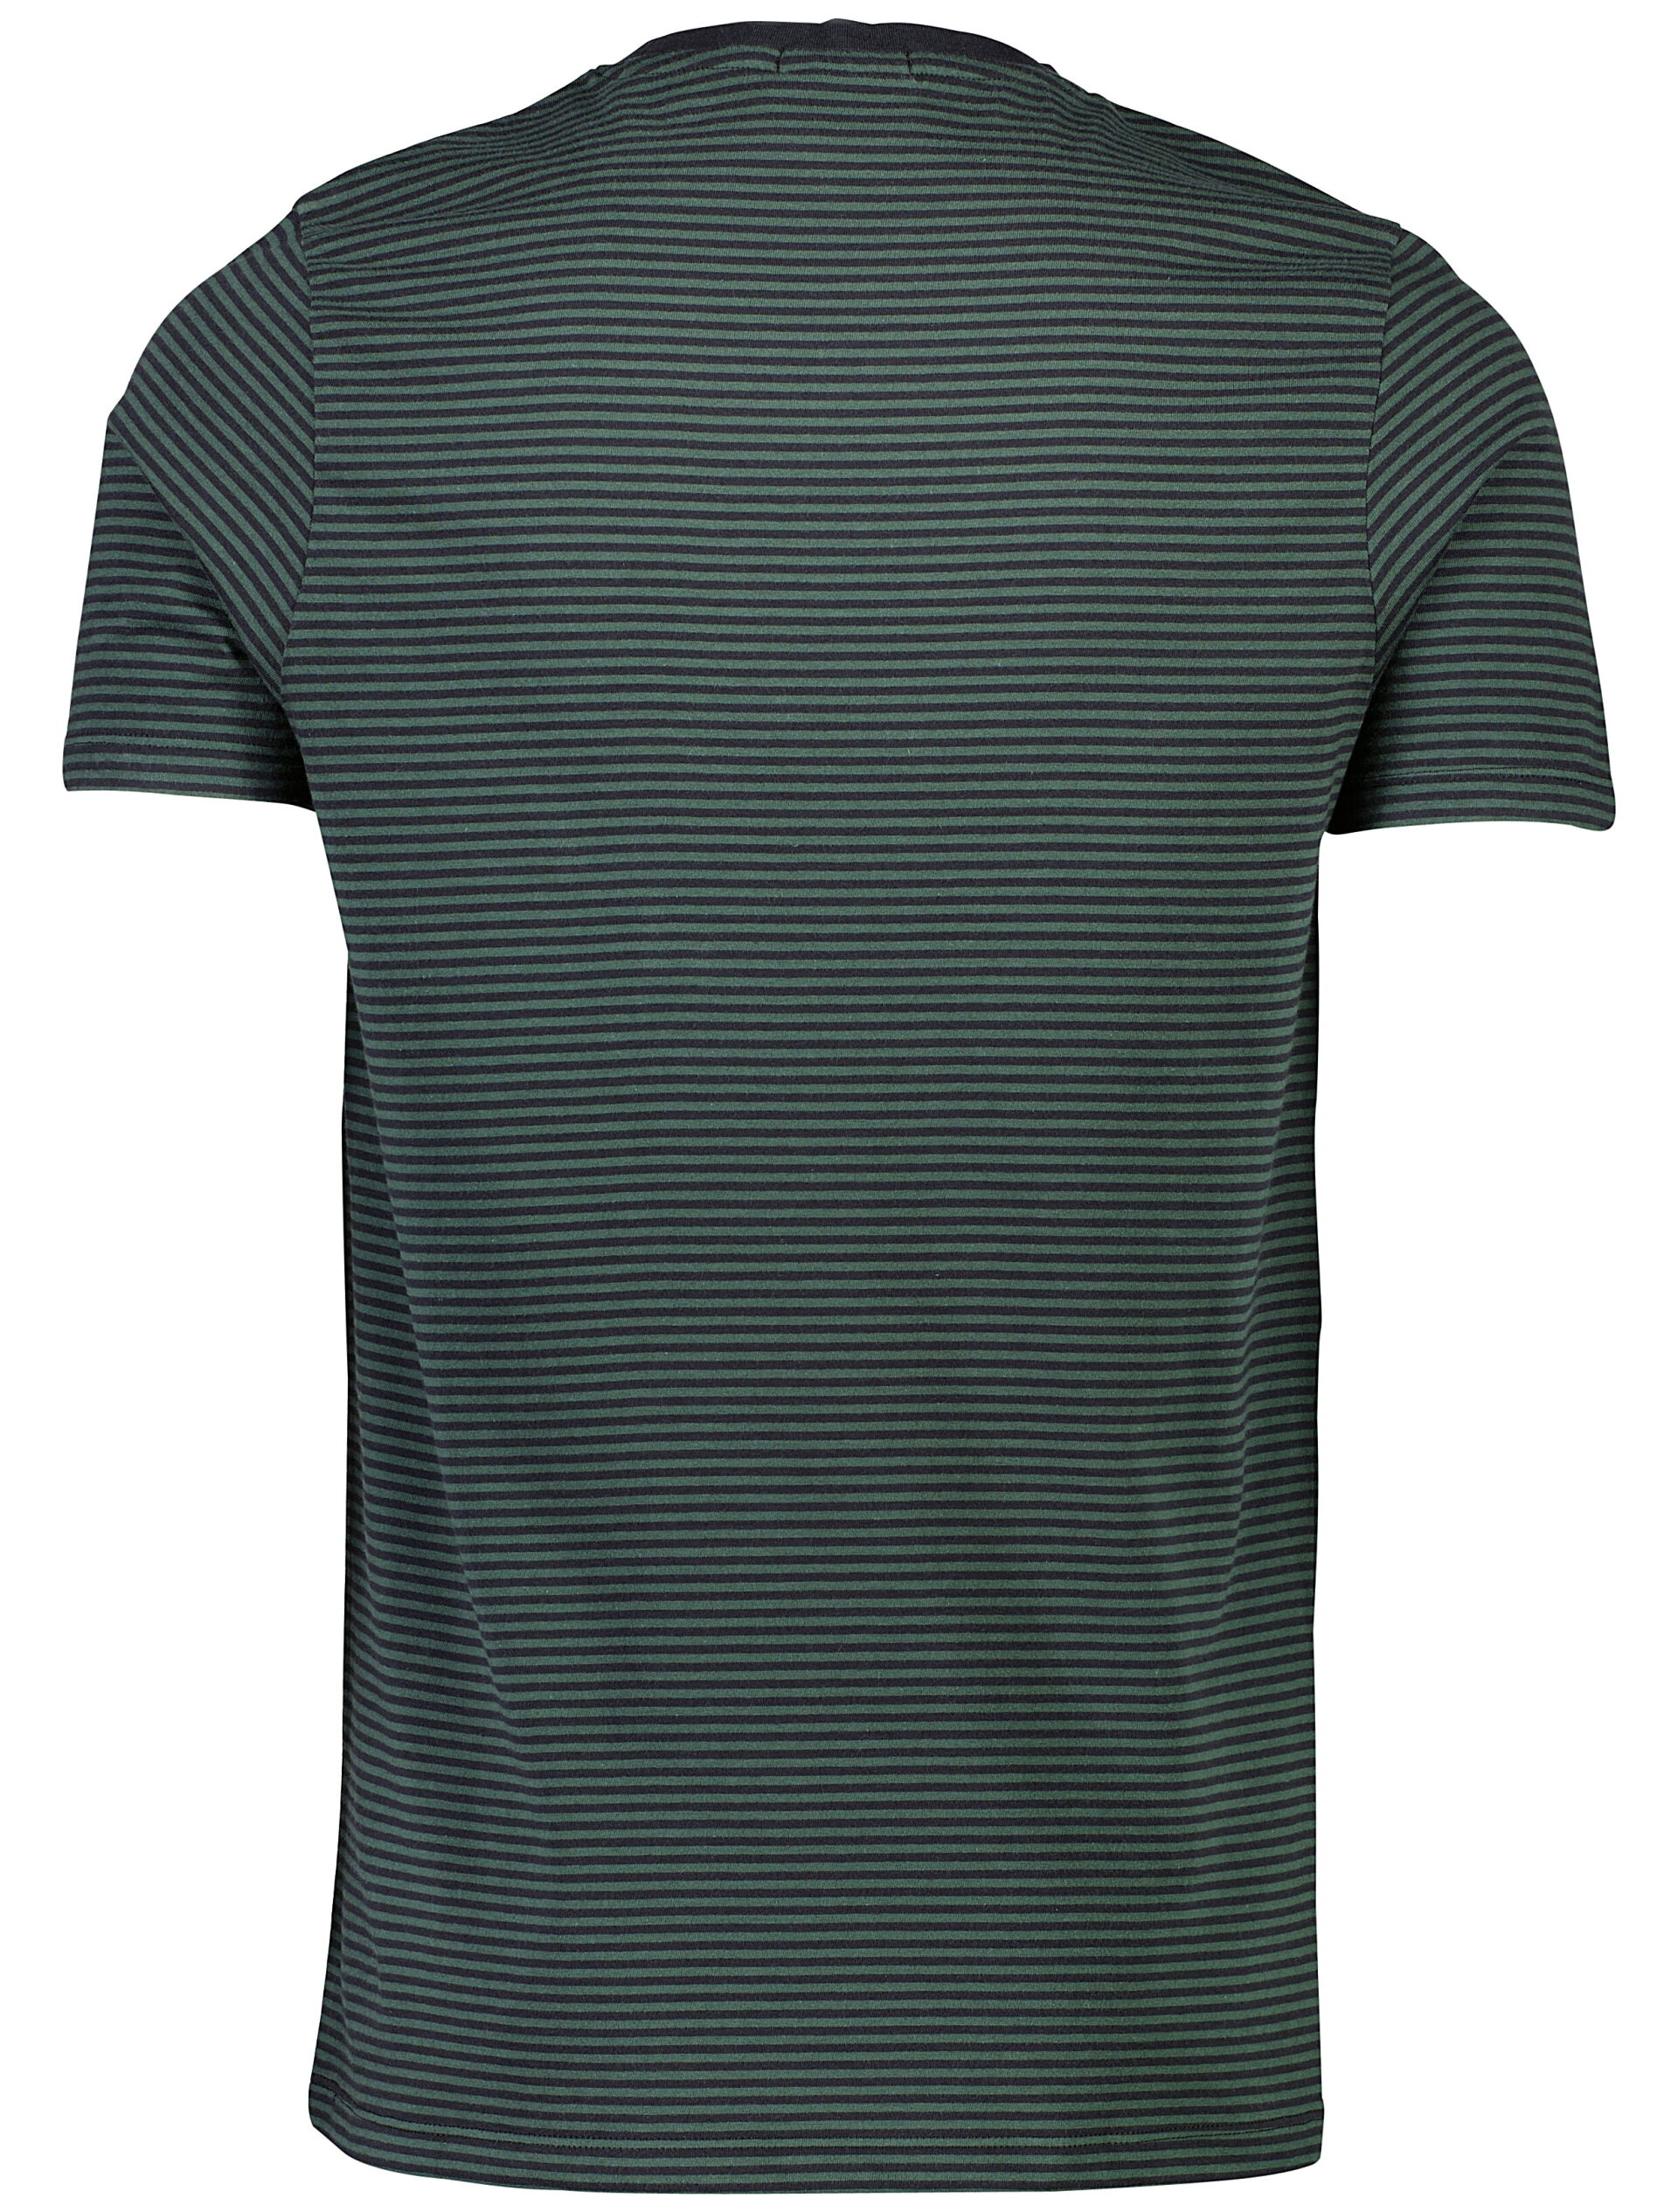 Junk de Luxe  T-shirt 60-452035